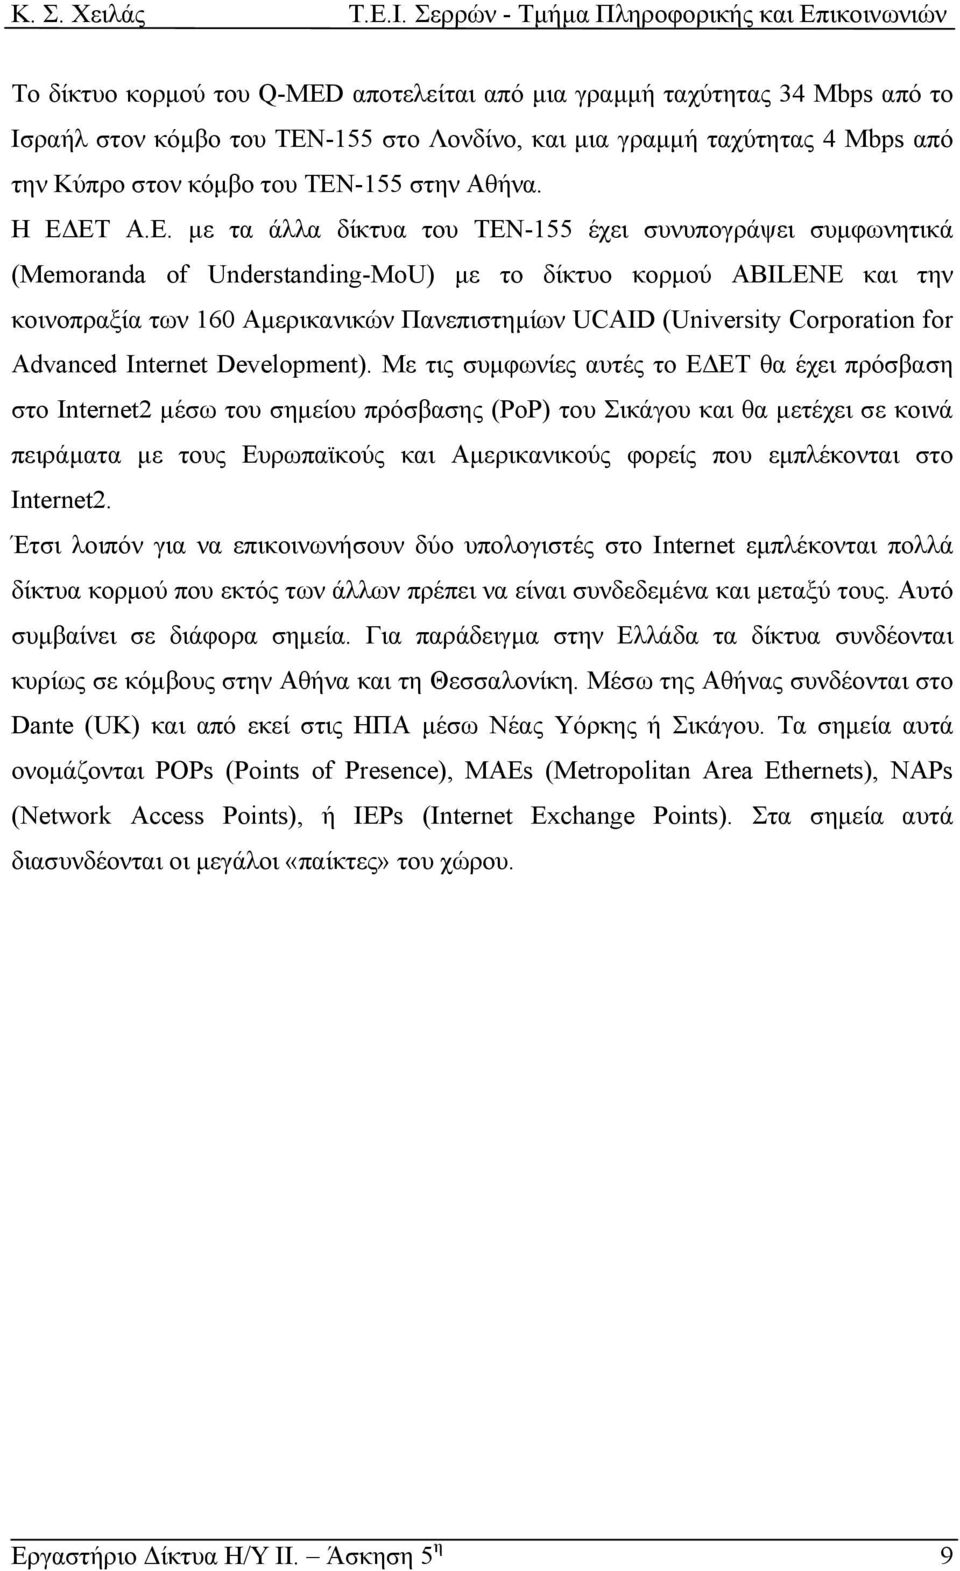 ΕΤ Α.Ε. µε τα άλλα δίκτυα του ΤΕΝ-155 έχει συνυπογράψει συµφωνητικά (Memoranda of Understanding-MoU) µε το δίκτυο κορµού ABILENE και την κοινοπραξία των 160 Αµερικανικών Πανεπιστηµίων UCAID